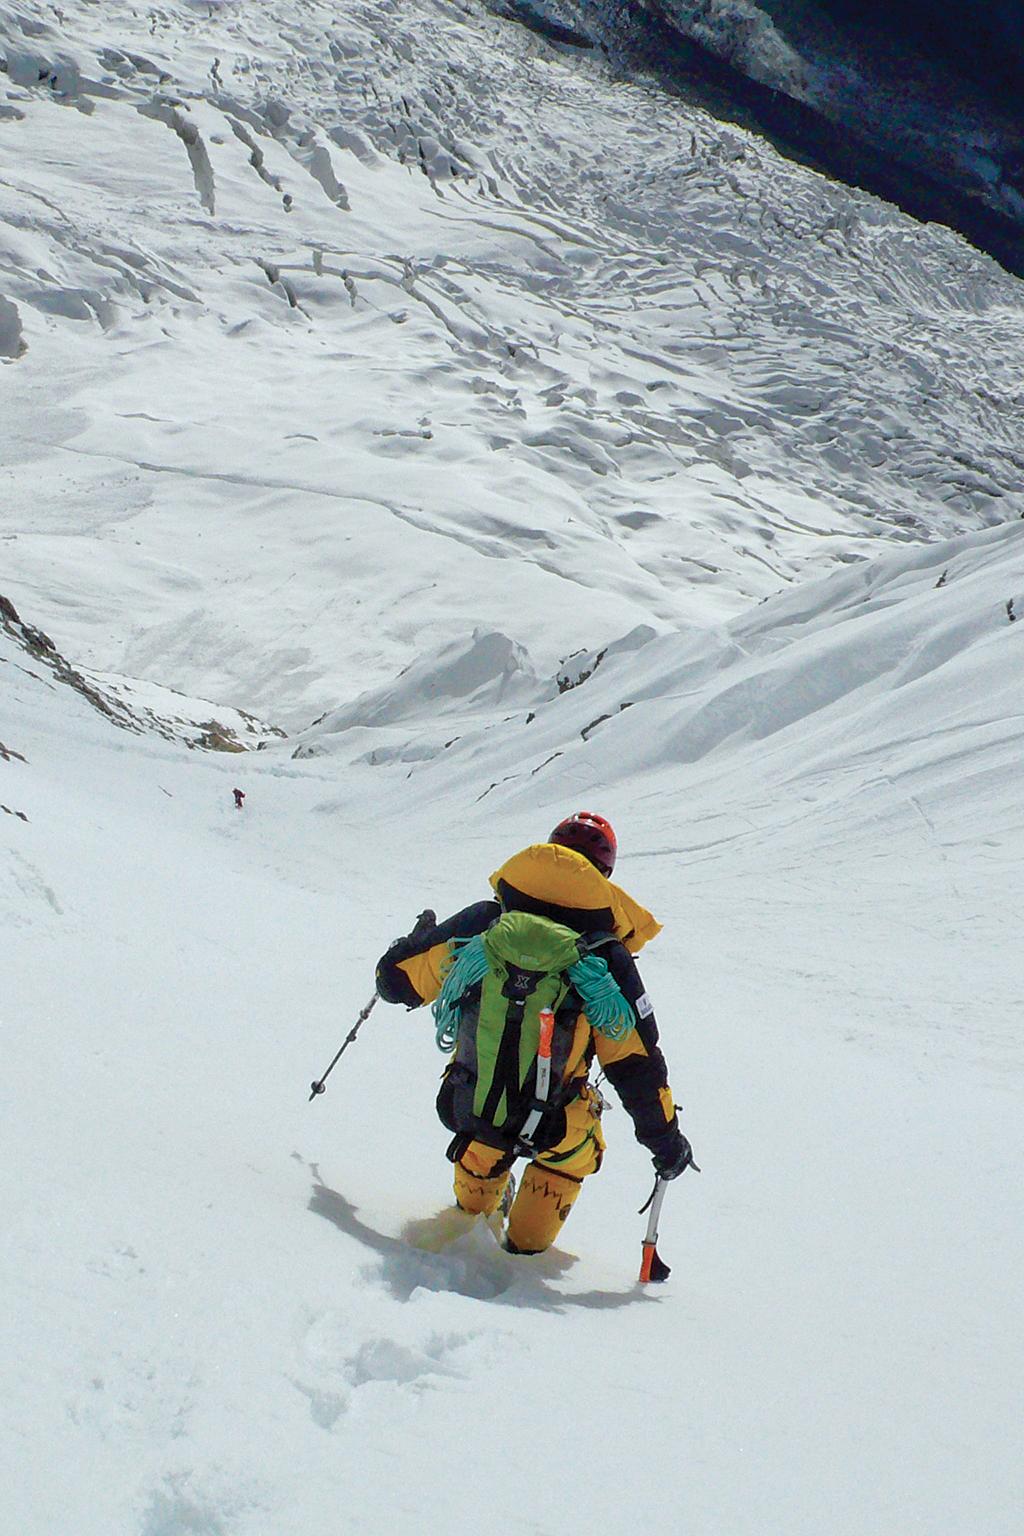 Jean Troillet STILE ALPINO Lo scalatore e marinaio svizzero-canadese Jean Troillet si diplomò guida alpina nel 1969. Nel corso della sua carriera ha scalato 10 vette da 8.